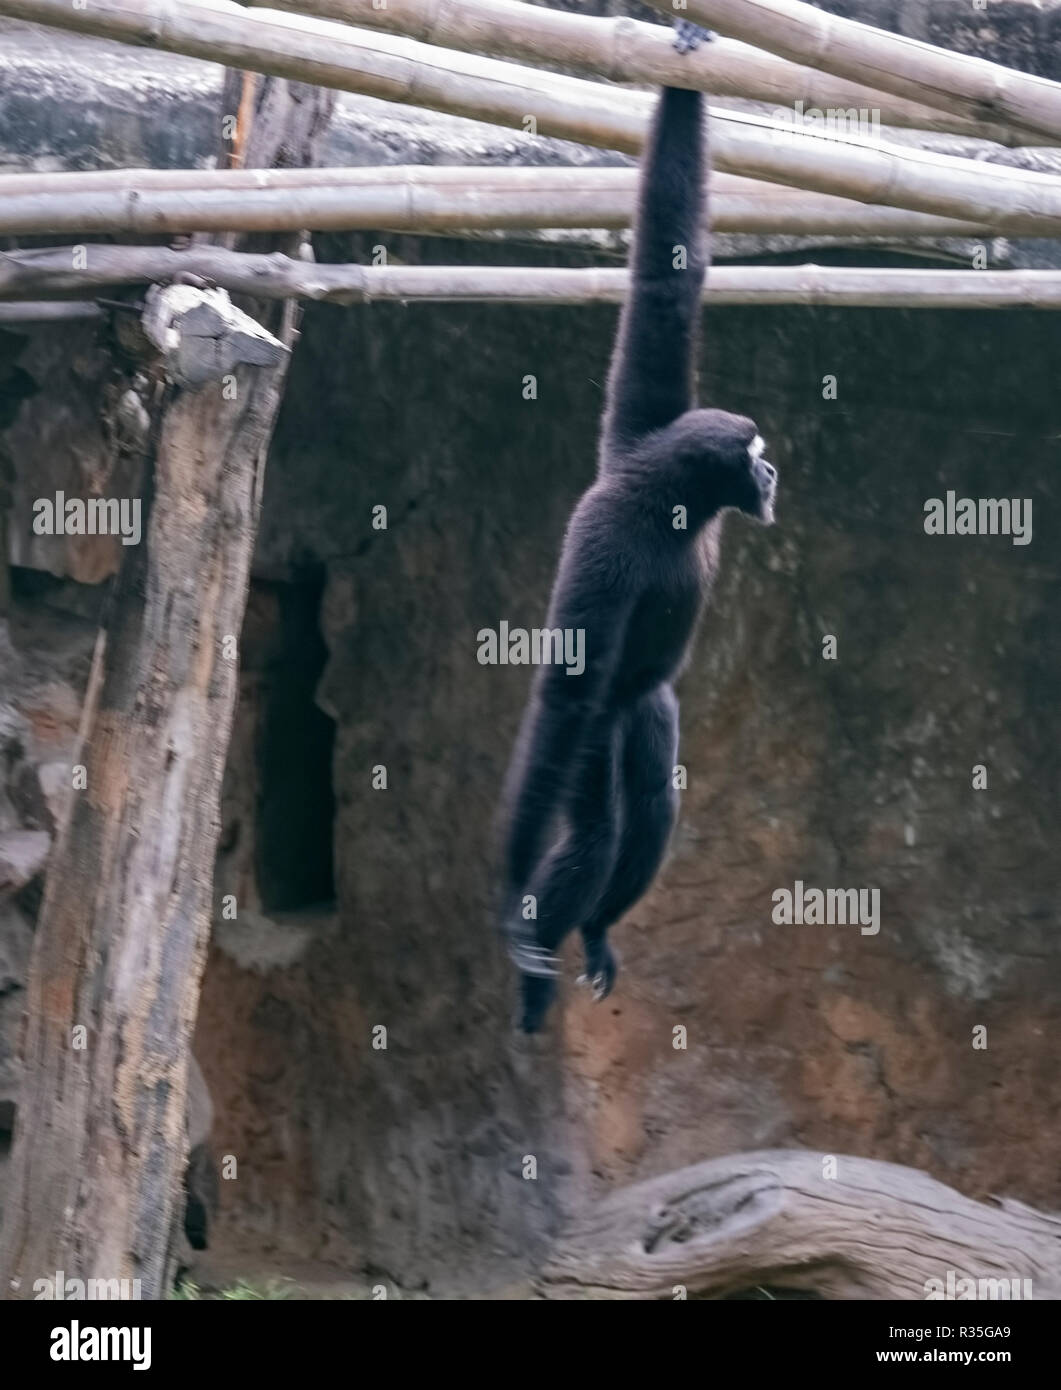 Zoo,animals,Hollok Gibbon monkey,swing on bamboo poles,Delhi zoo,New Delhi  National Capital Region,India Stock Photo - Alamy